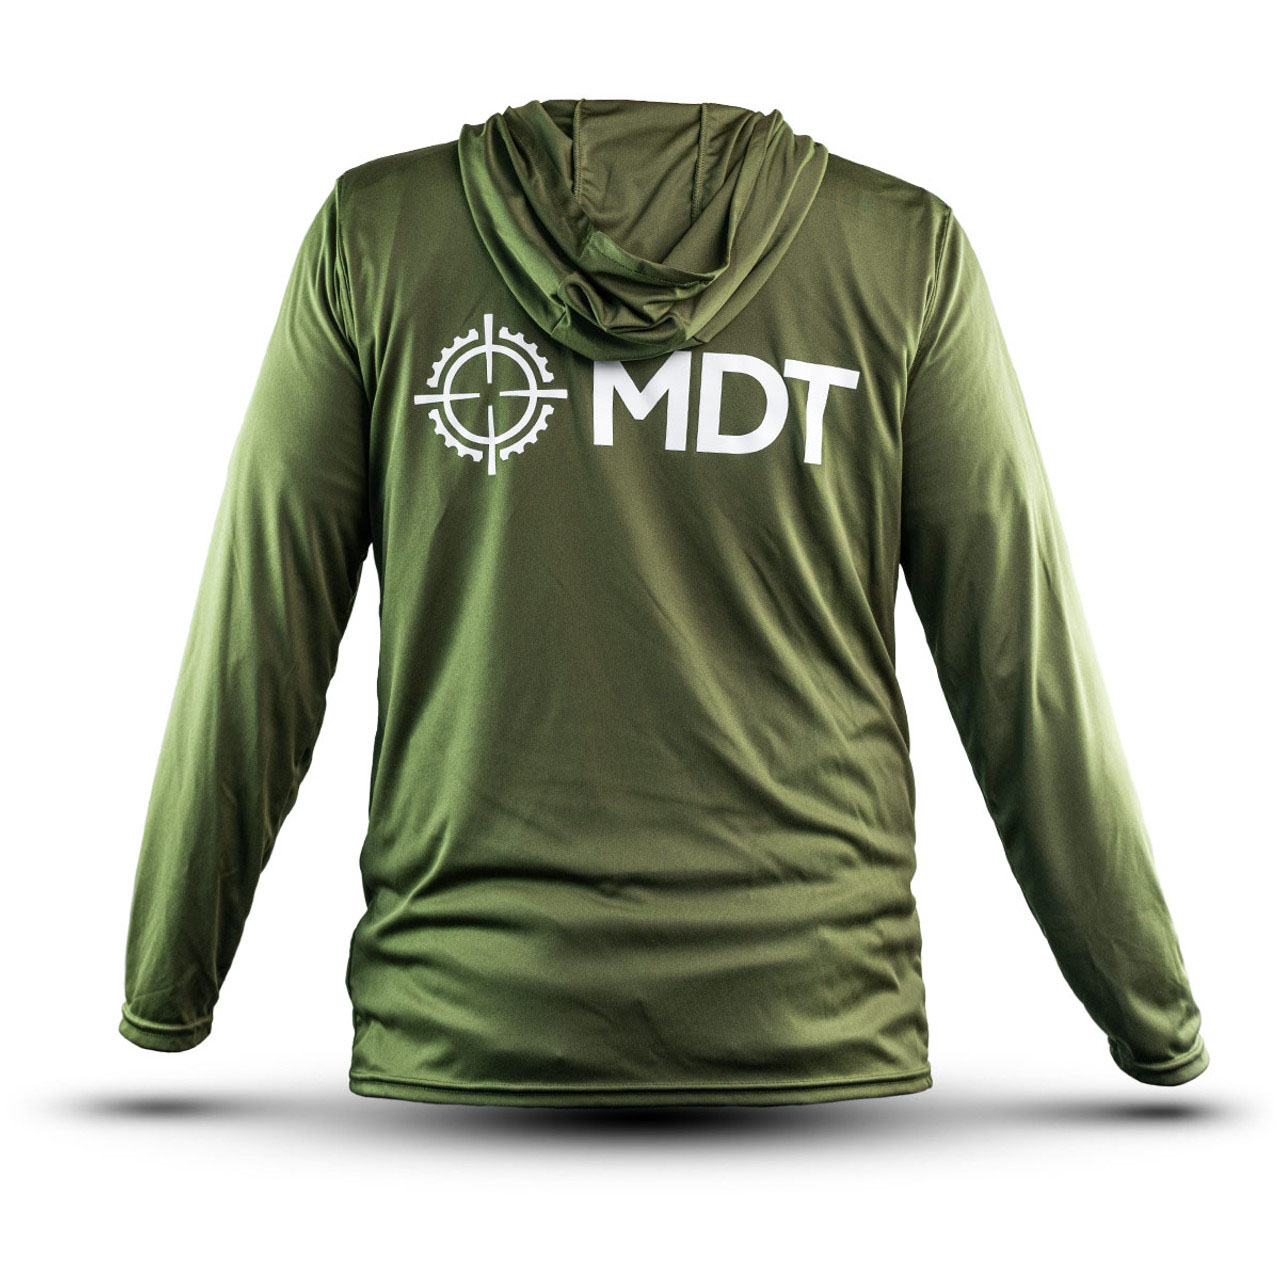 MDT Merchandise - MDT Sun Shirt Hoodies - Unisex - XL - GRN